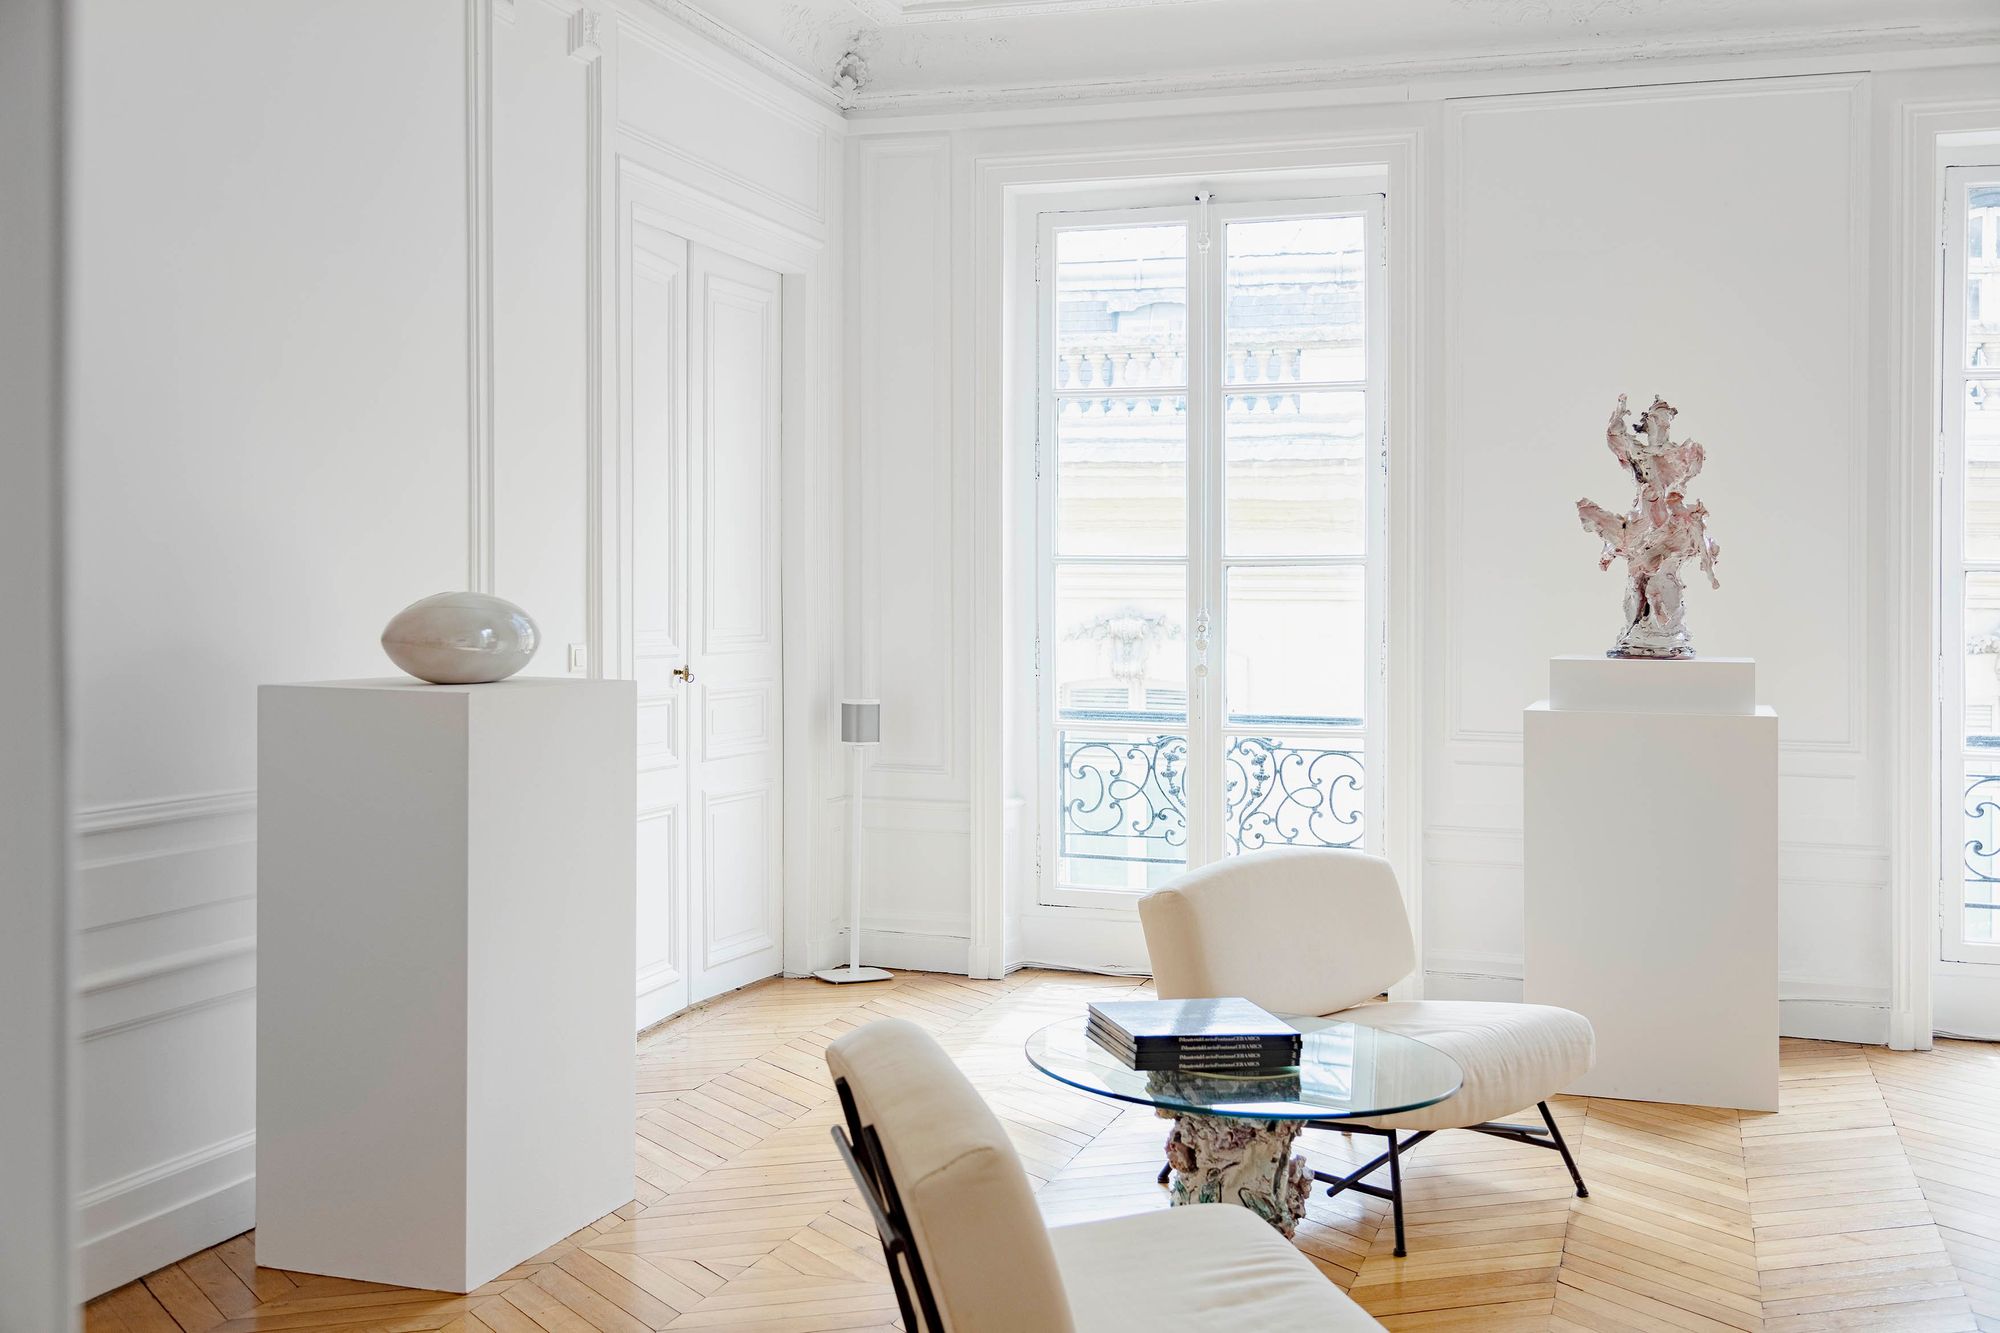 Lucio Fontana, 'Fontana Ceramics' at Robilant+Voena, Paris, France on ...